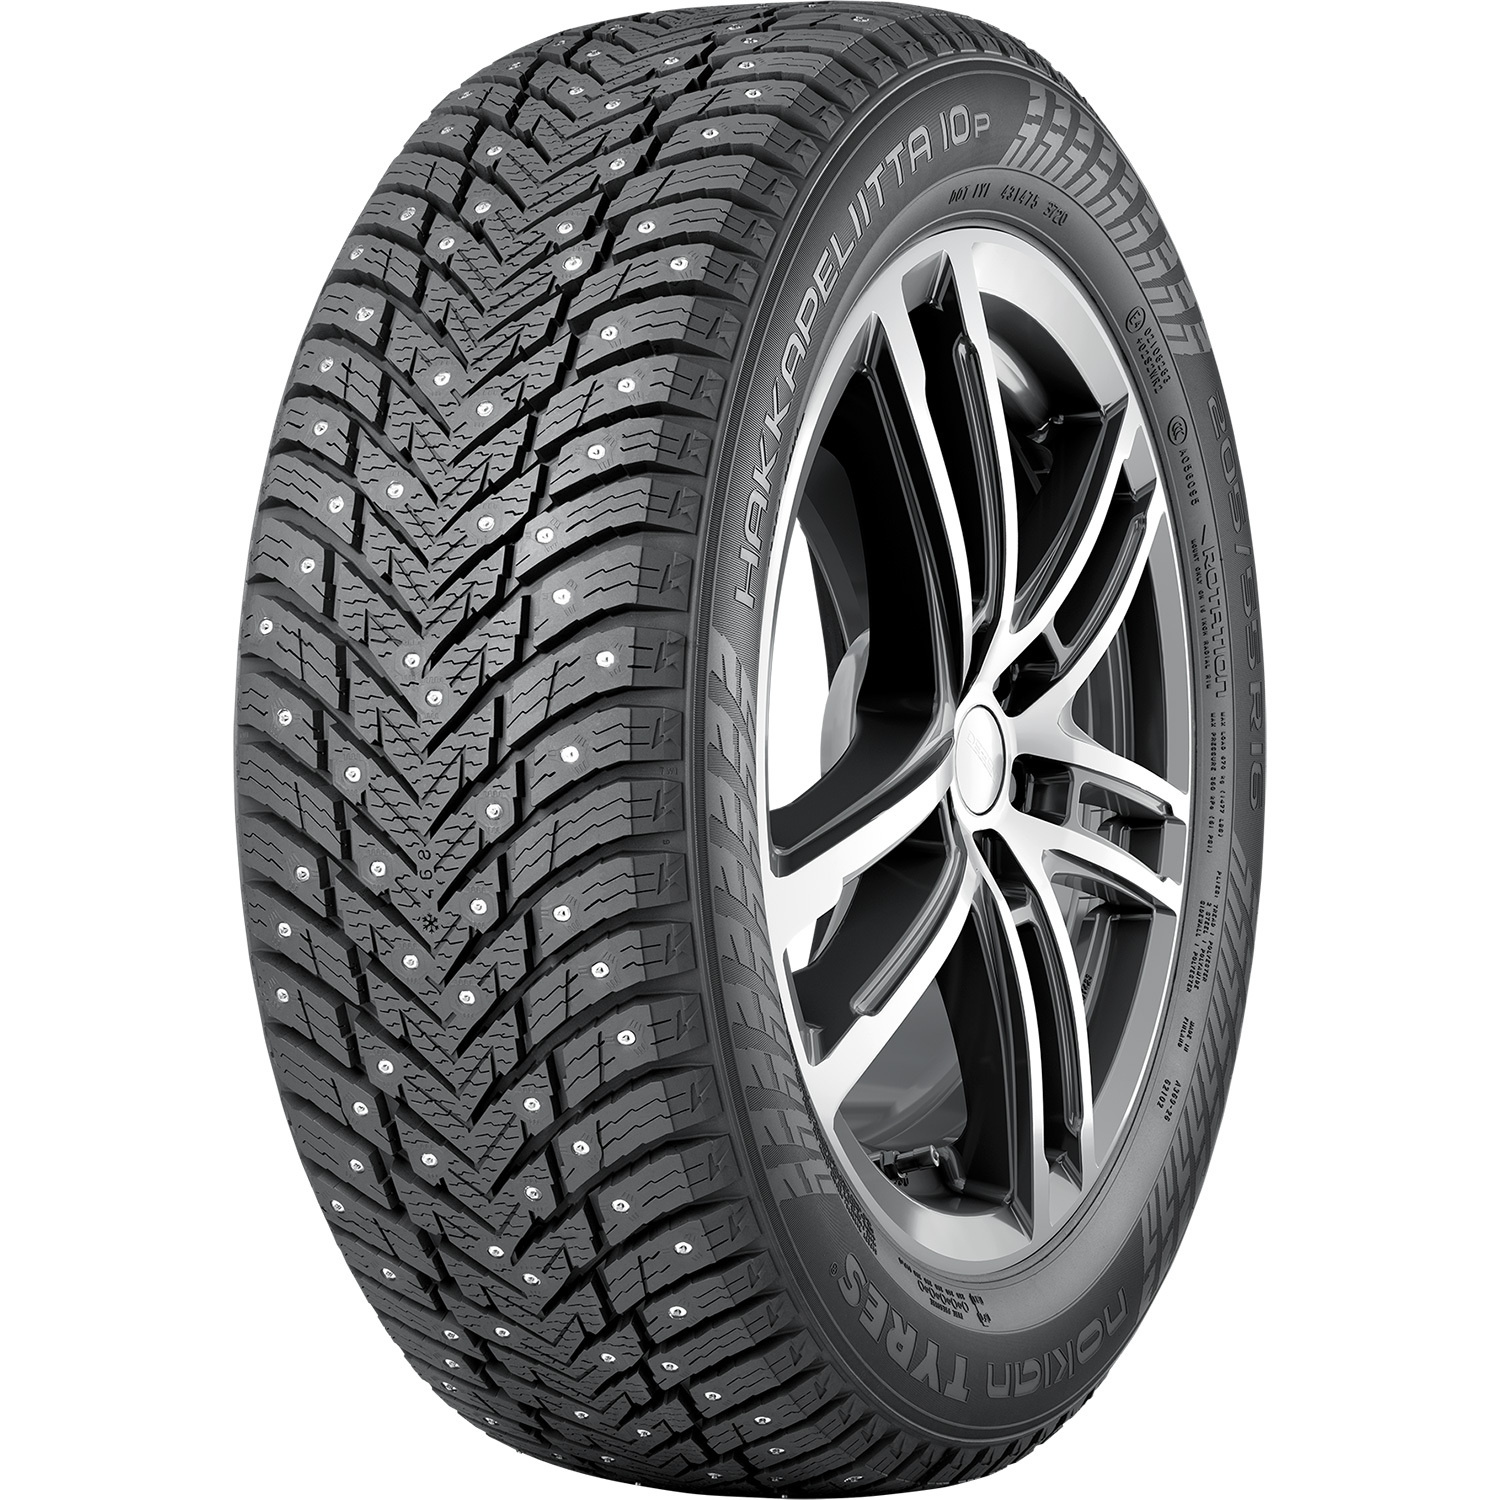 Автомобильная шина Nokian Tyres Hakkapeliitta 10p 245/40 R18 97T Шипованные цена и фото